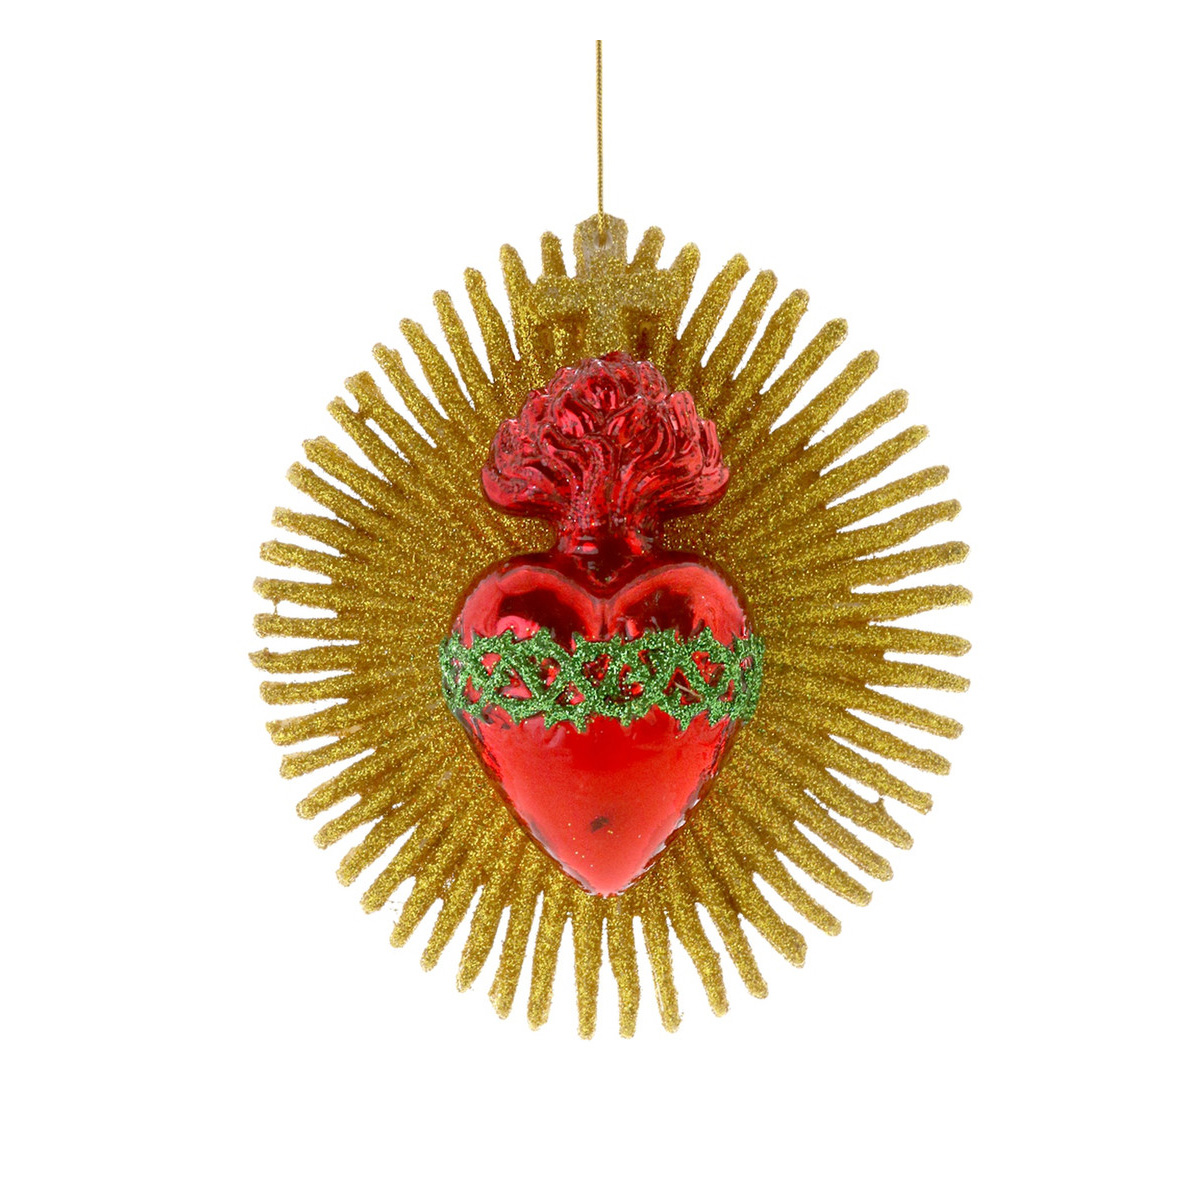 SUNBURST WITH SACRED HEART Weihnachtsschmuck, Weihnachtskugel, Glas, ca. 12 cm , Brennendes Herz, Mexico